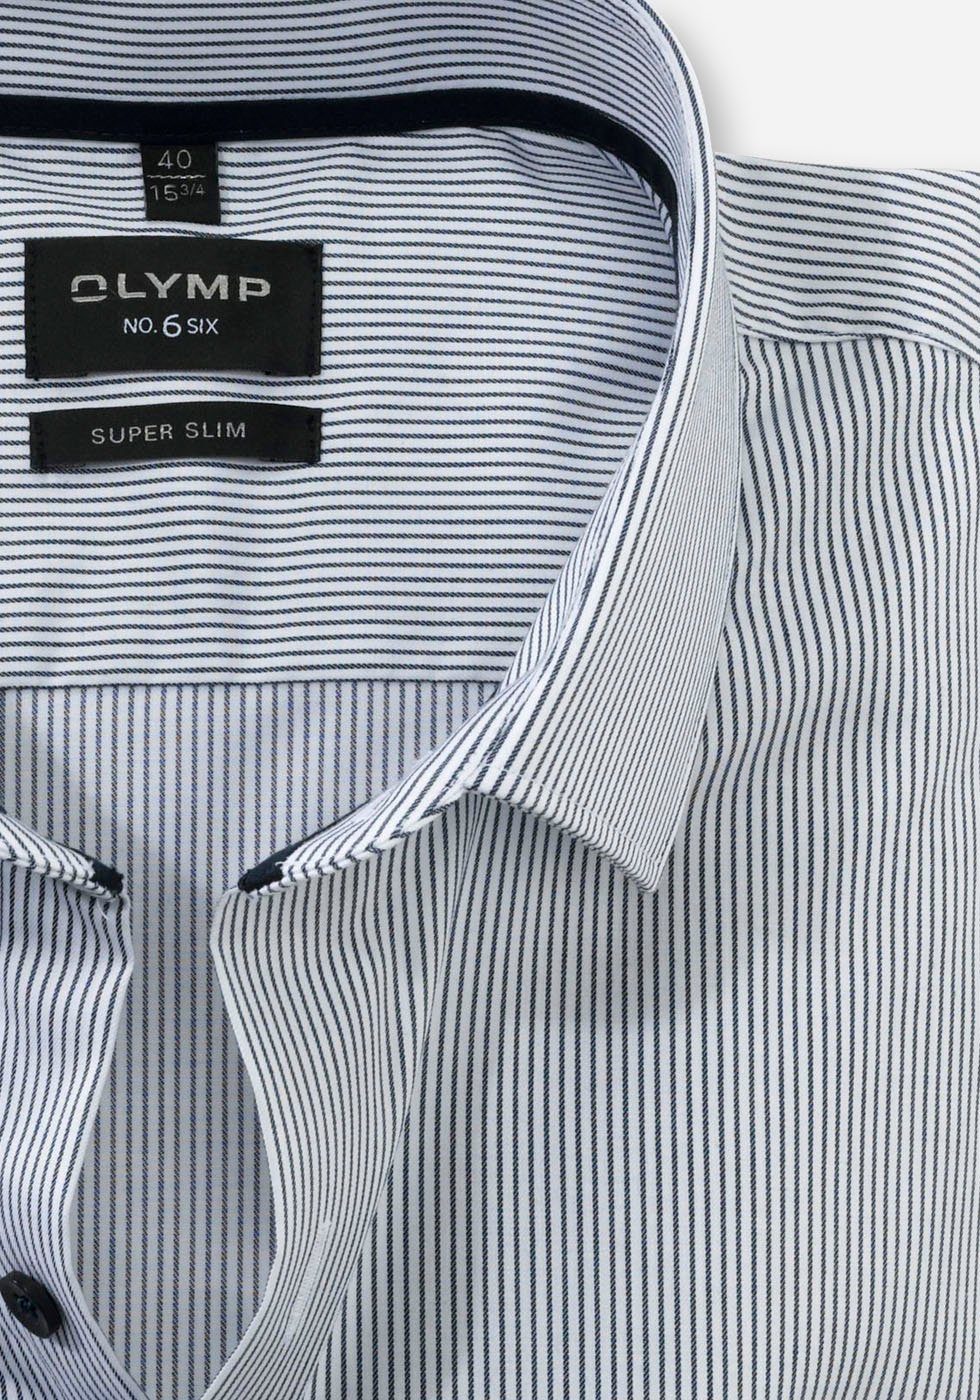 OLYMP Businesshemd slim 6-Serie der super aus No. Six No